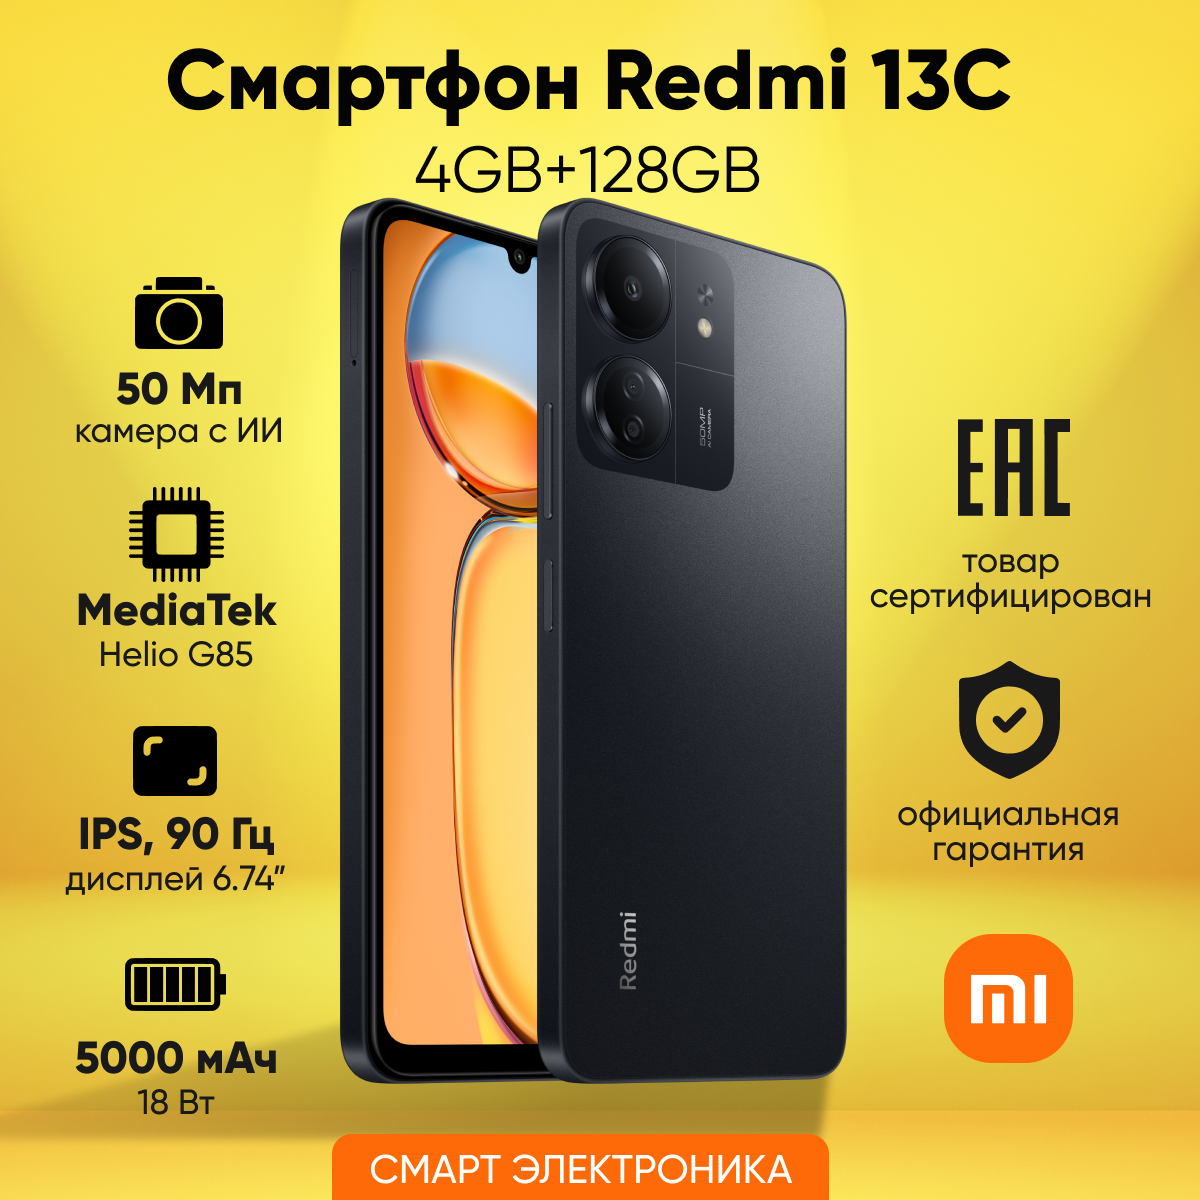 Смартфон Redmi 13C 4GB+128GB Black